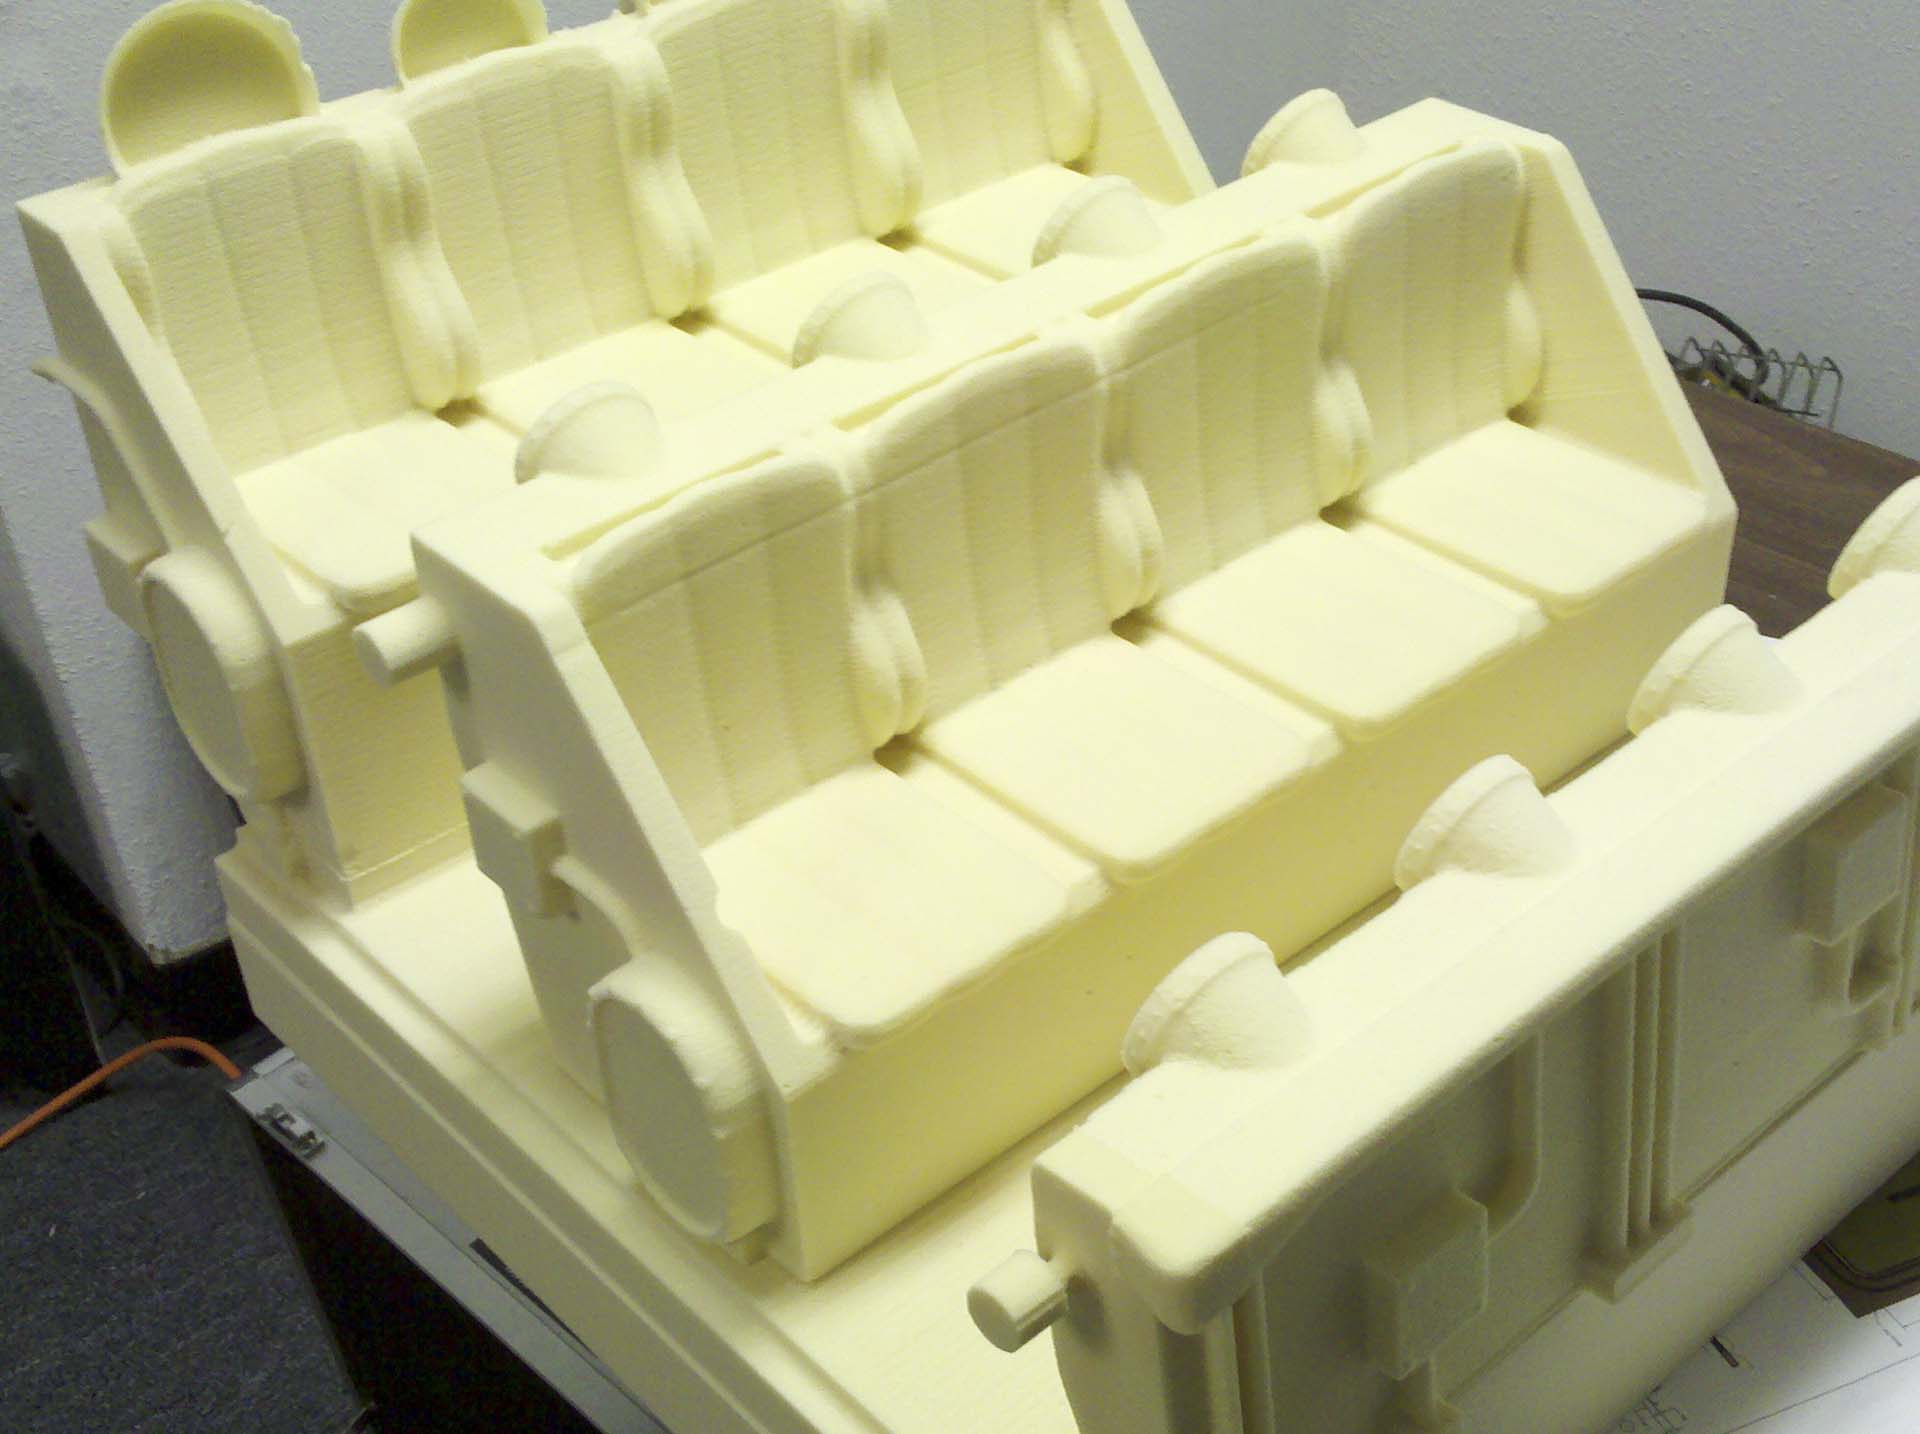 Foam prototype - 5 axis CNC